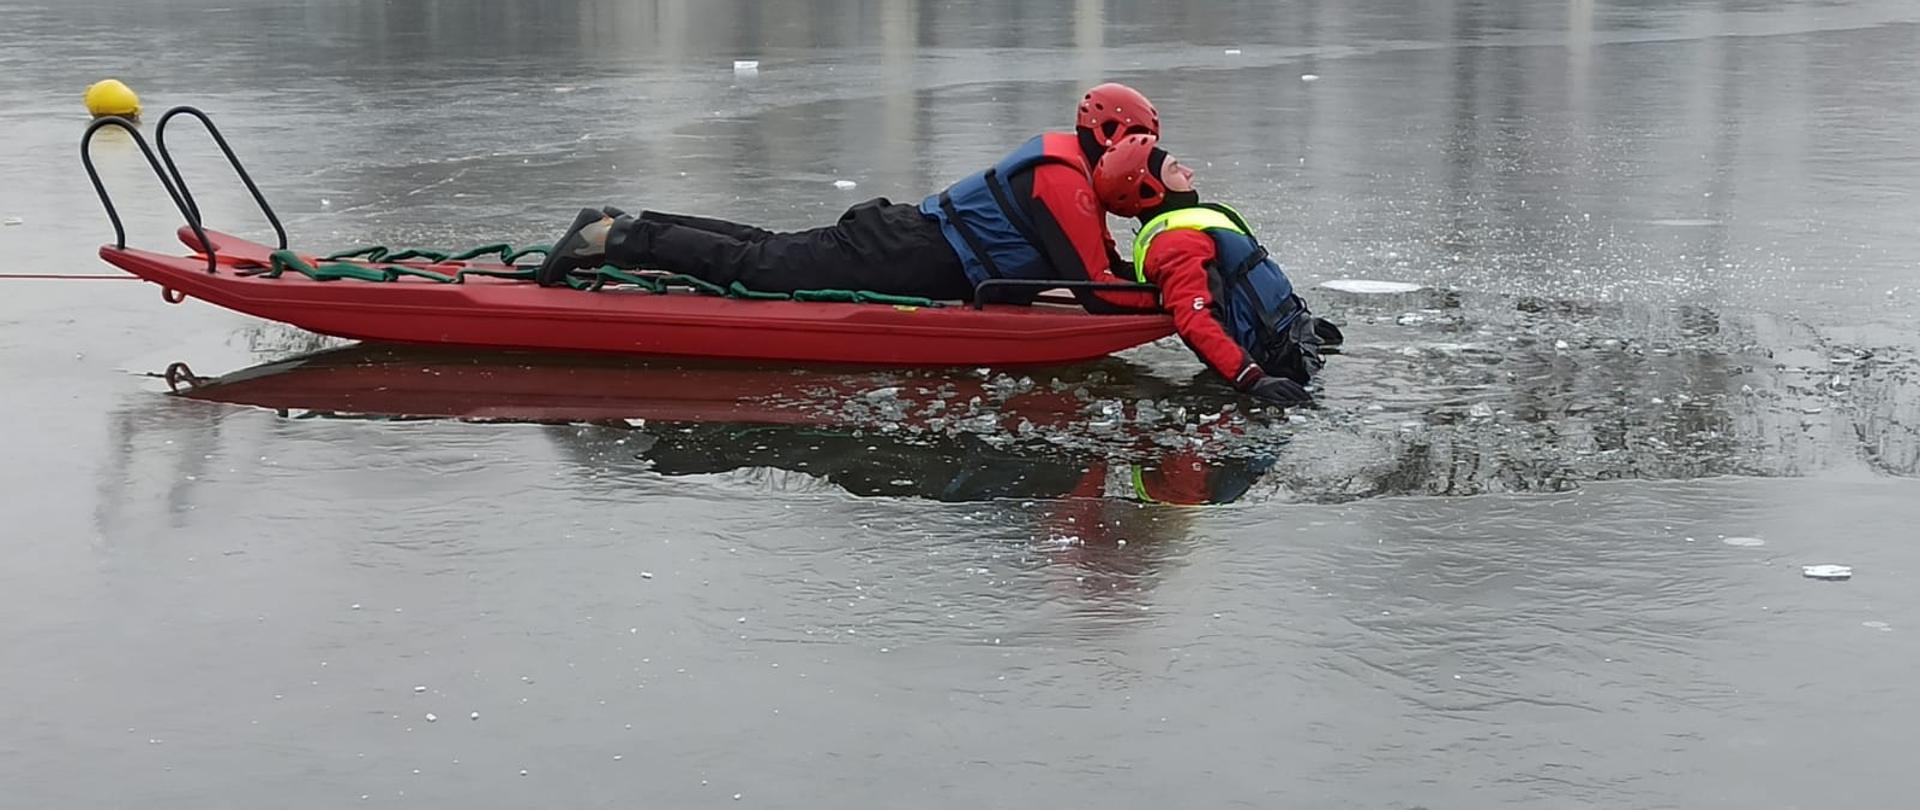 Zdjęcie przedstawia dwóch strażaków w ubraniach wypornościowych, którzy przy użyciu sani lodowych ćwiczą podejmowanie osoby poszkodowanej (topielca) z akwenu.